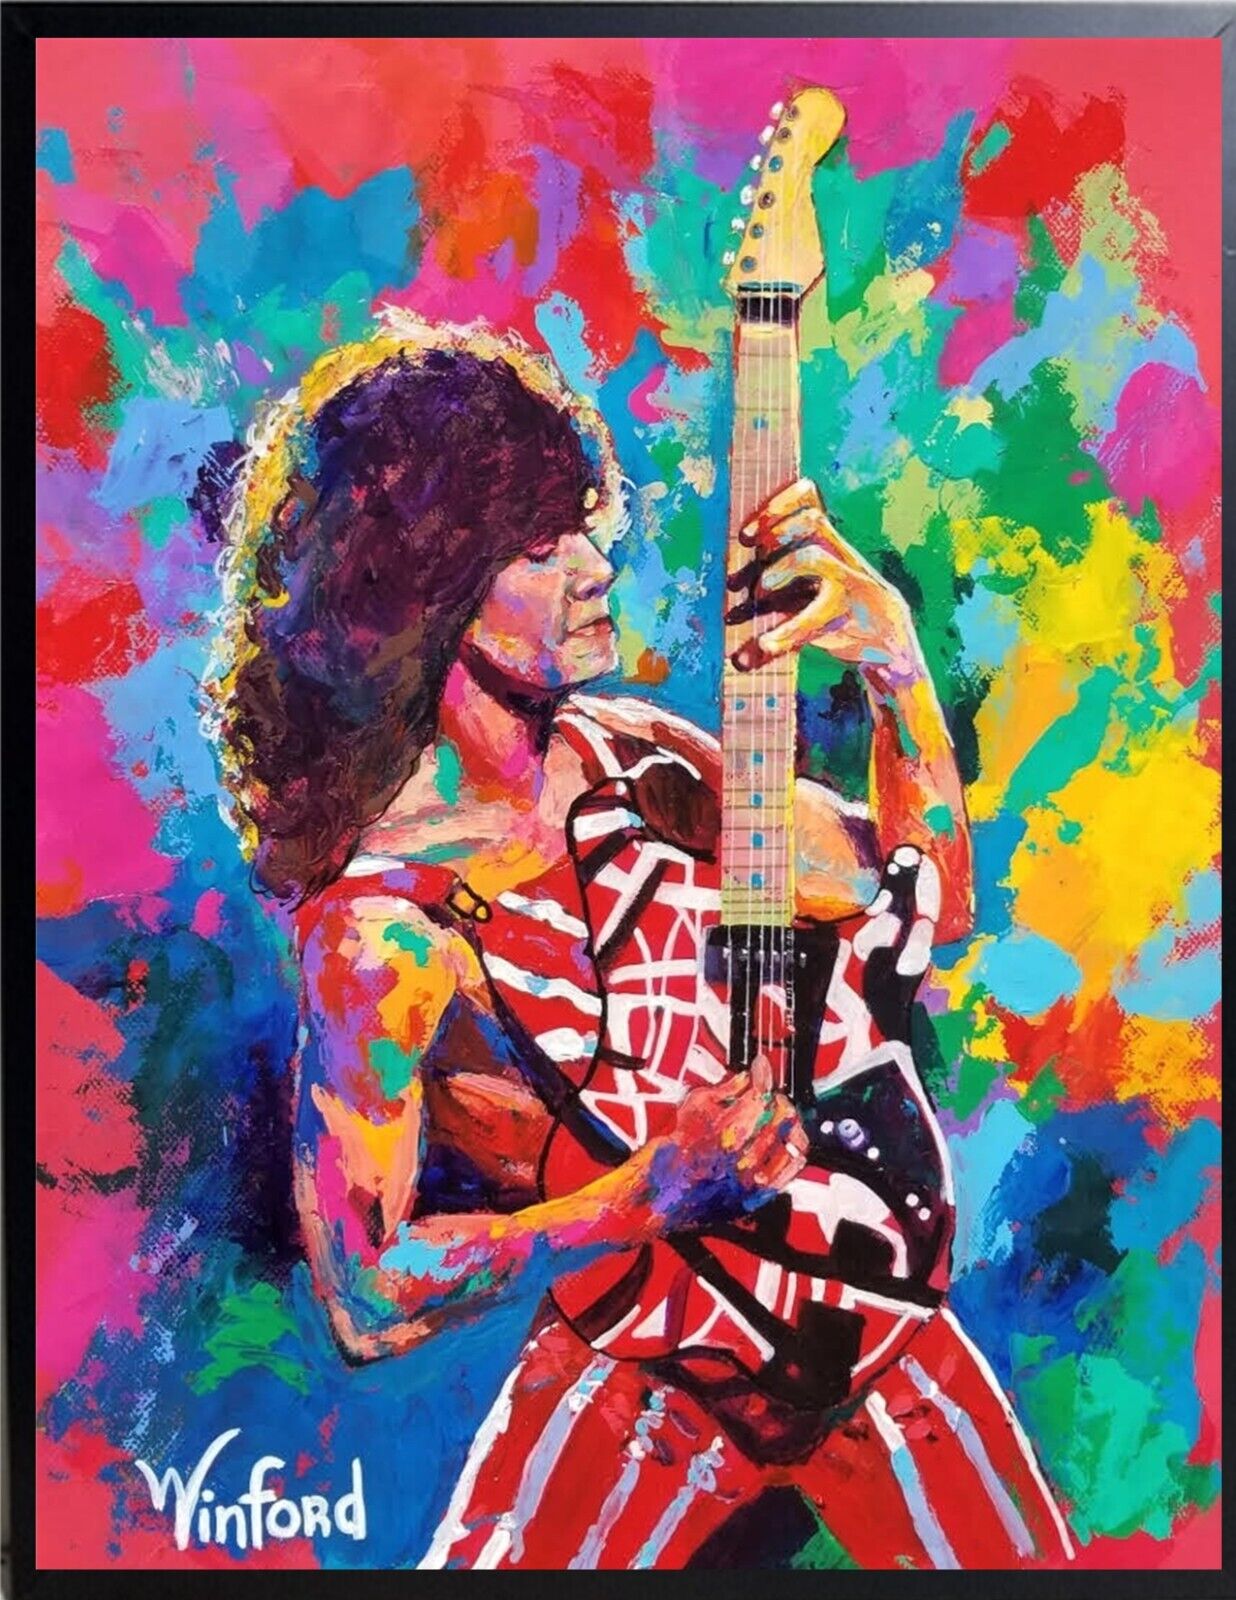 Sale Eddie Van Halen Hand-Textured 36H X 24W Premium Canvas Giclee $795 Now $275